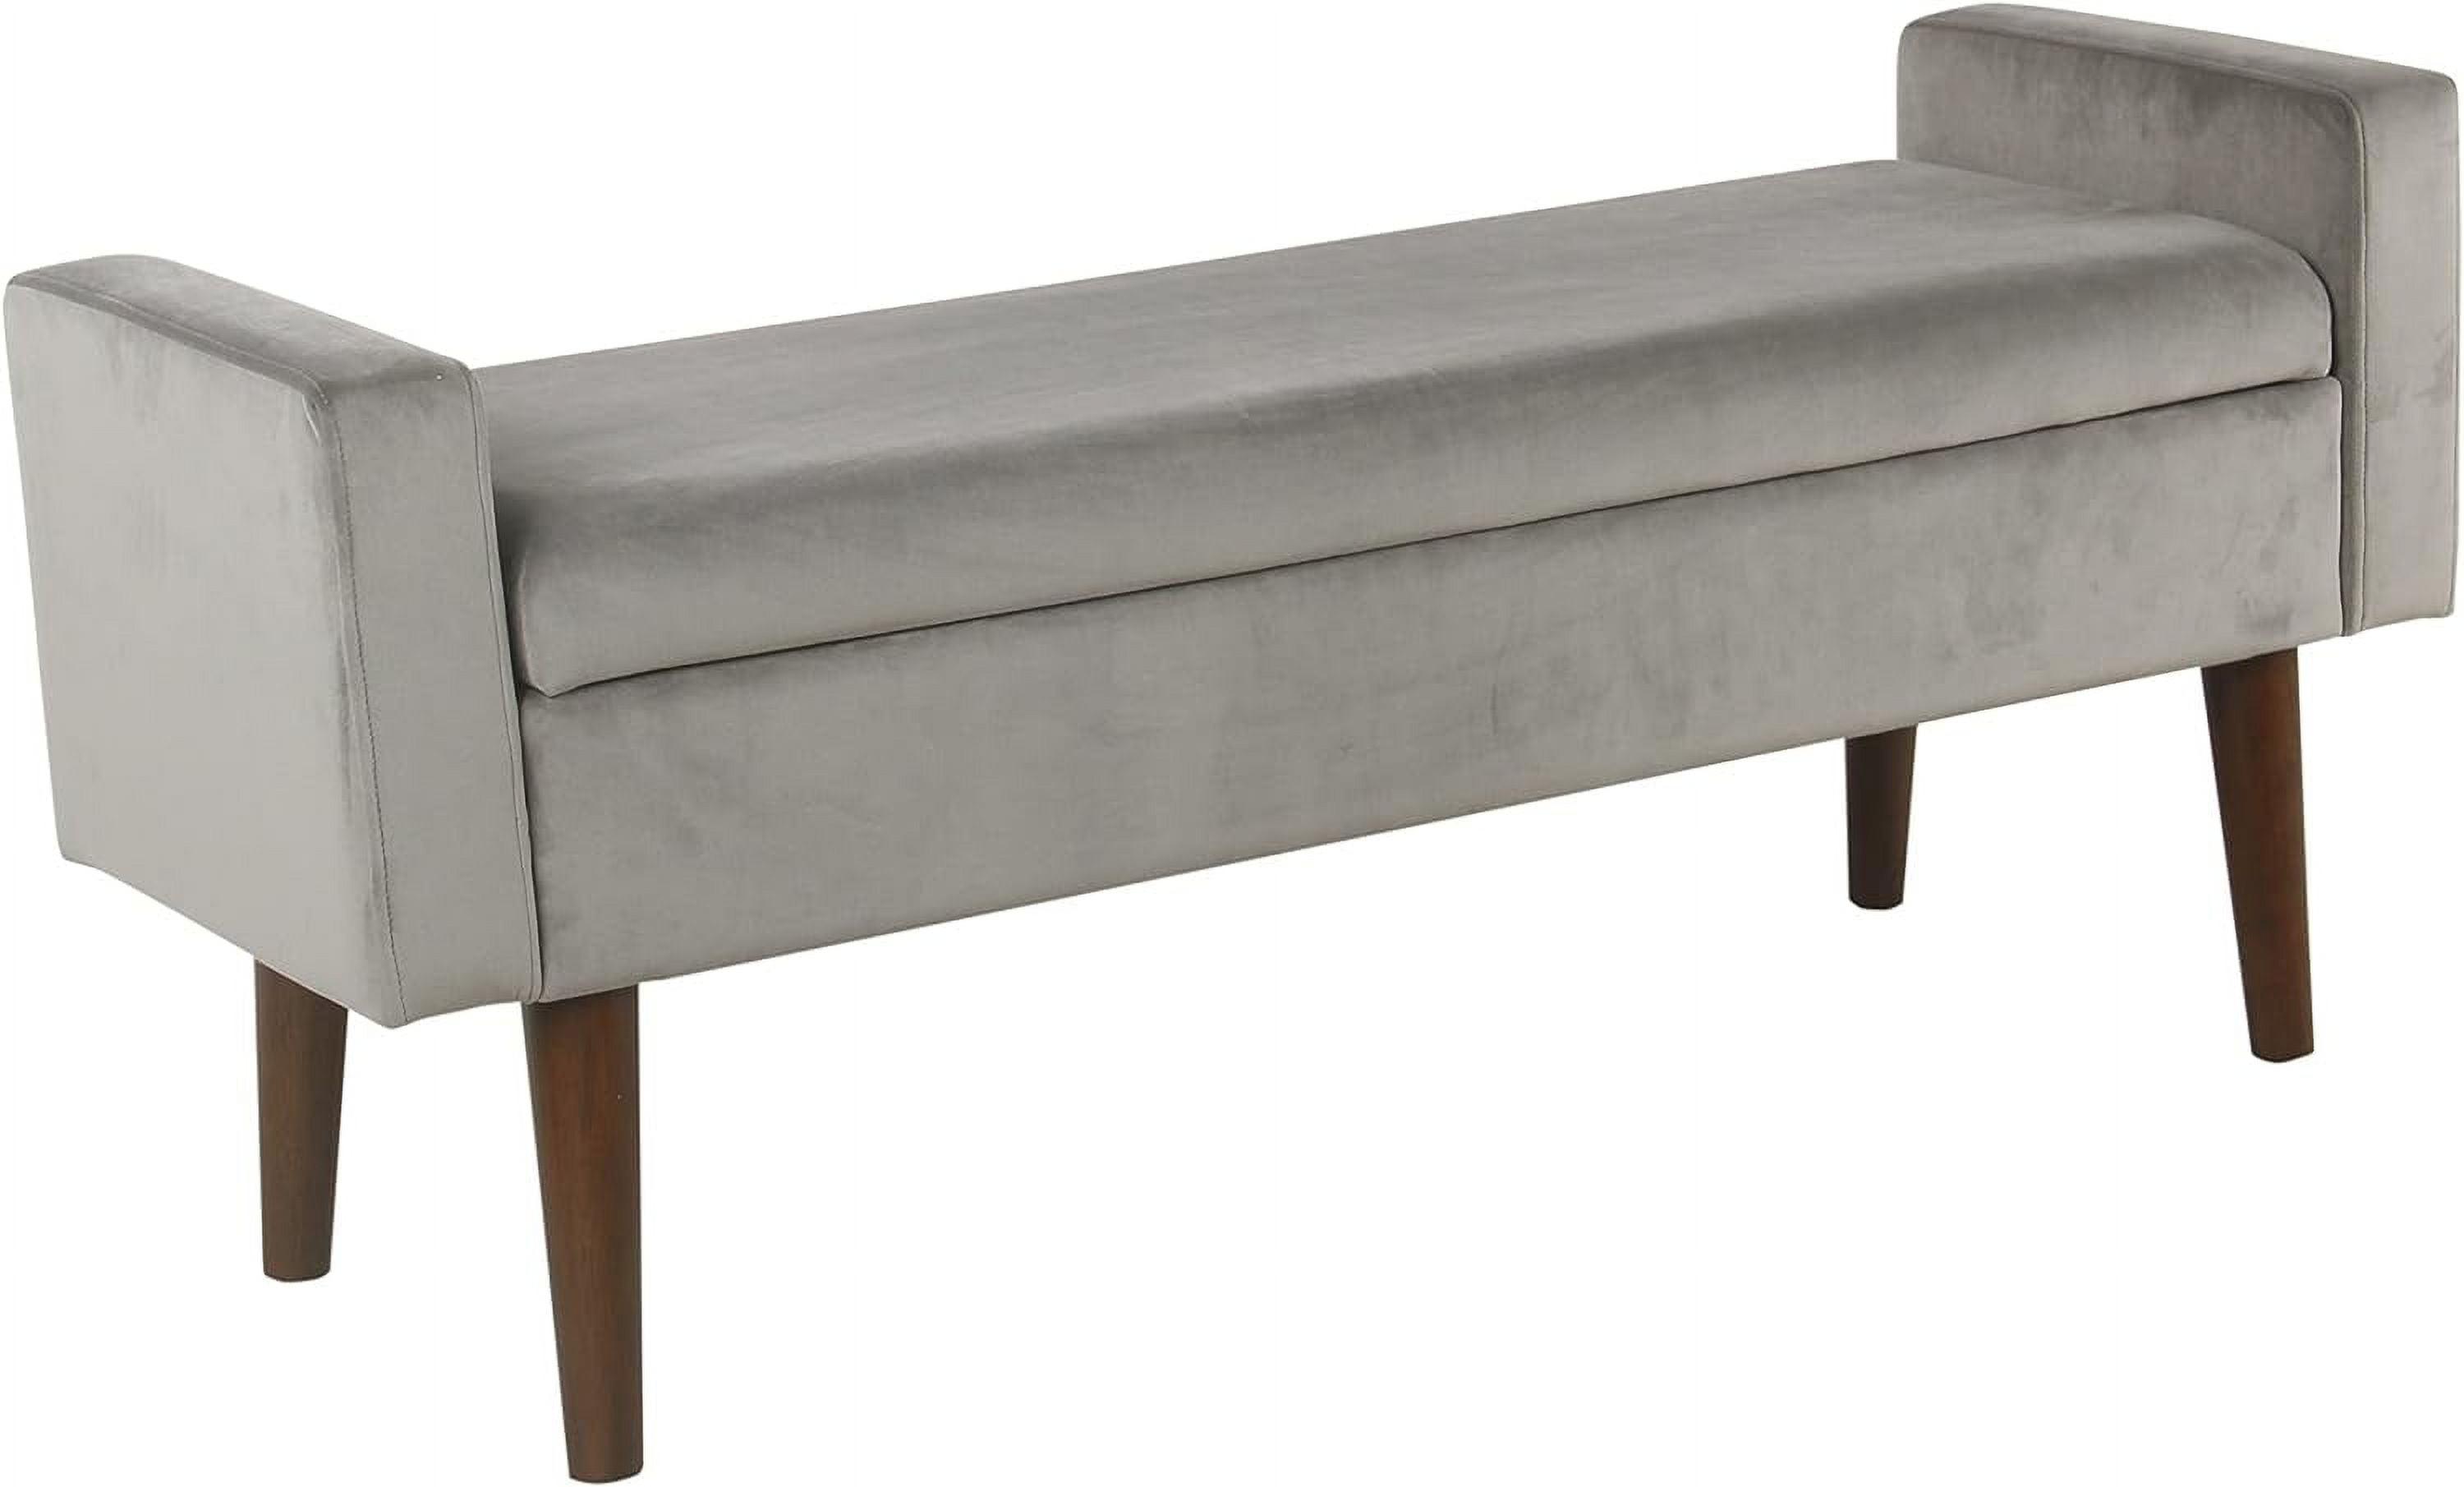 Modern Gray Velvet Upholstered Storage Bench with Tapered Wooden Feet